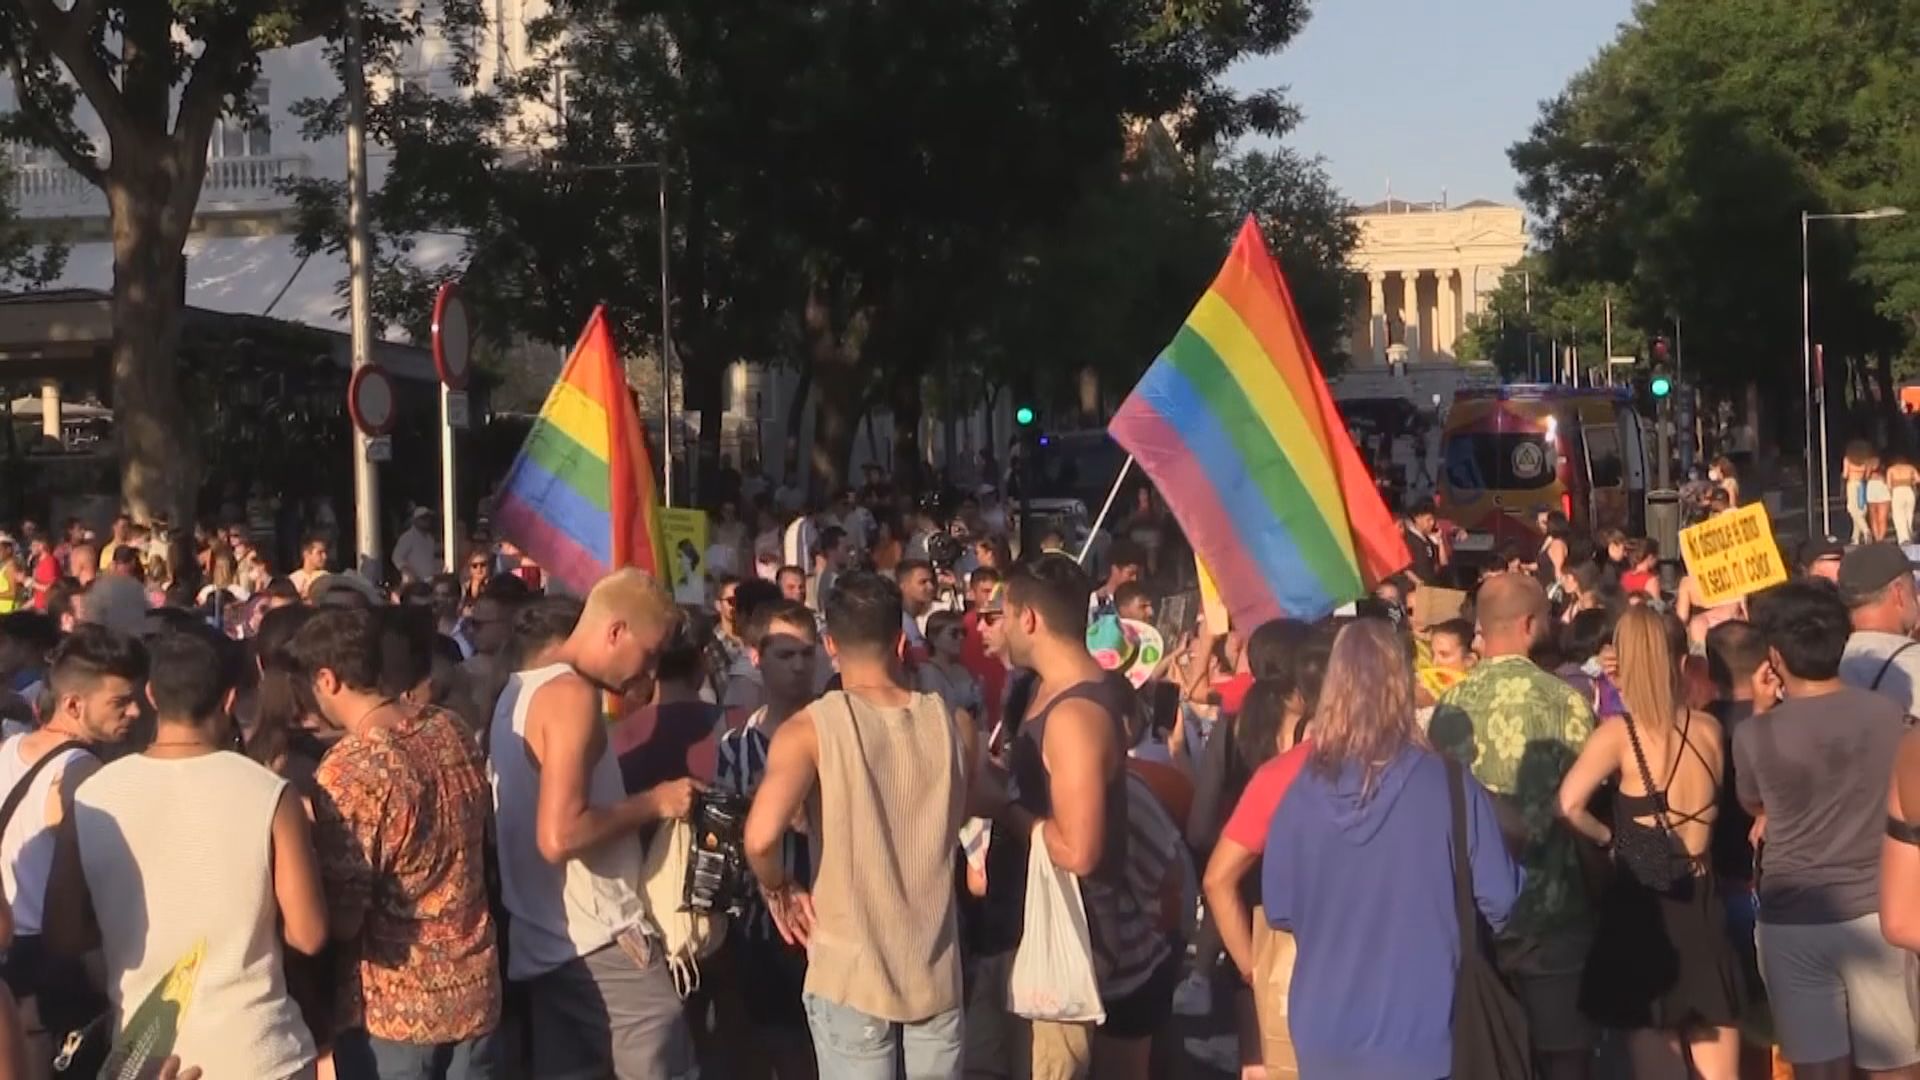 【環球薈報】西班牙通過法案擴大跨性別權利